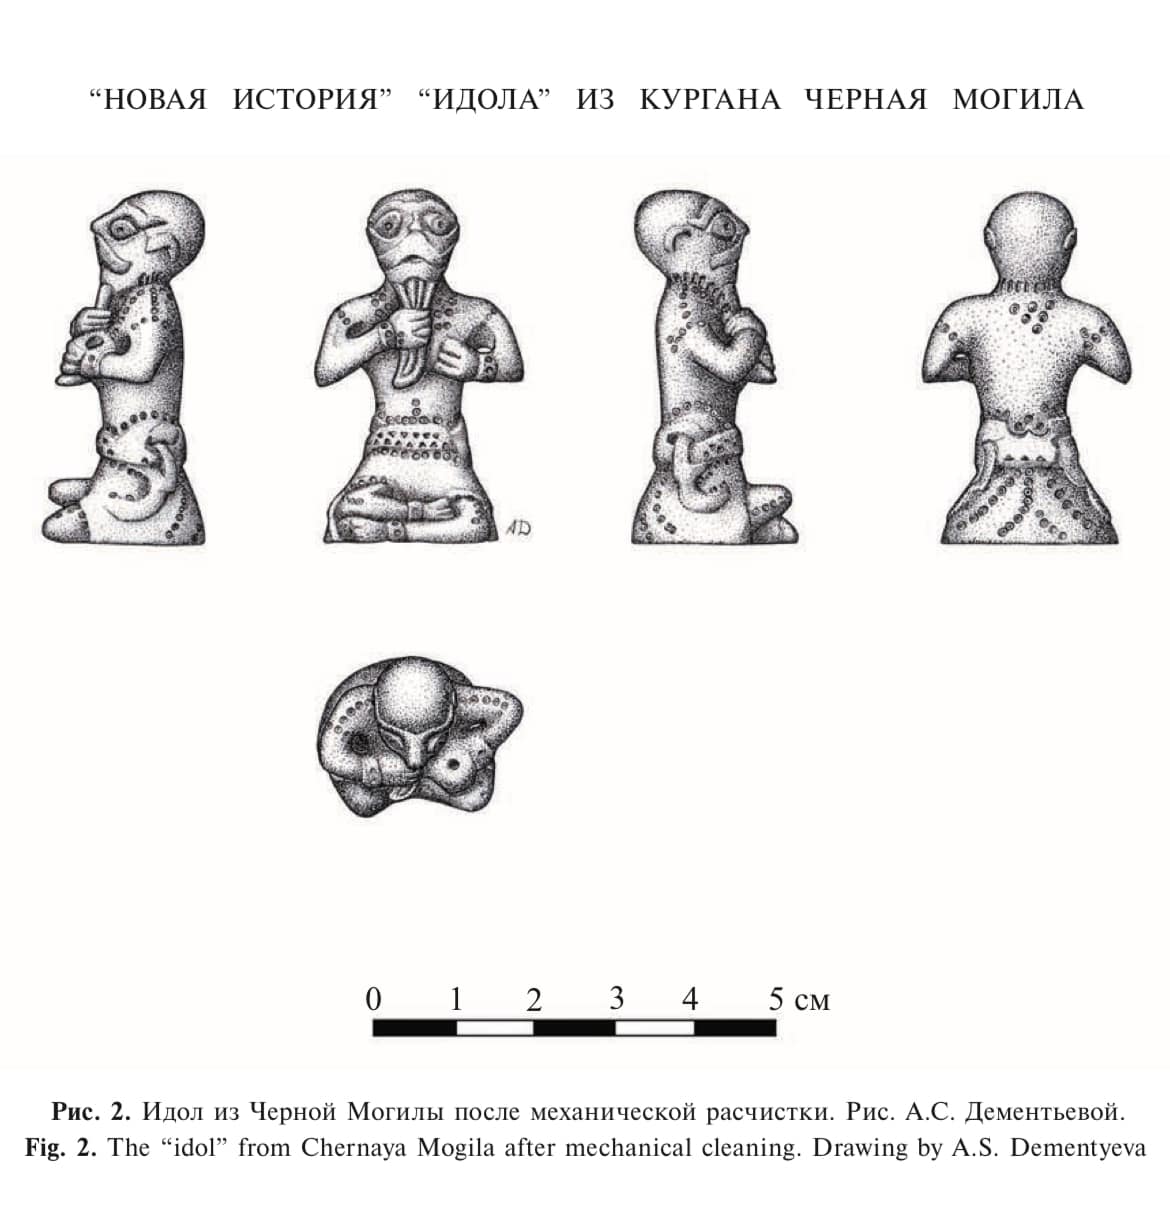 Чернігівські артефакти – в акт капітуляції рф